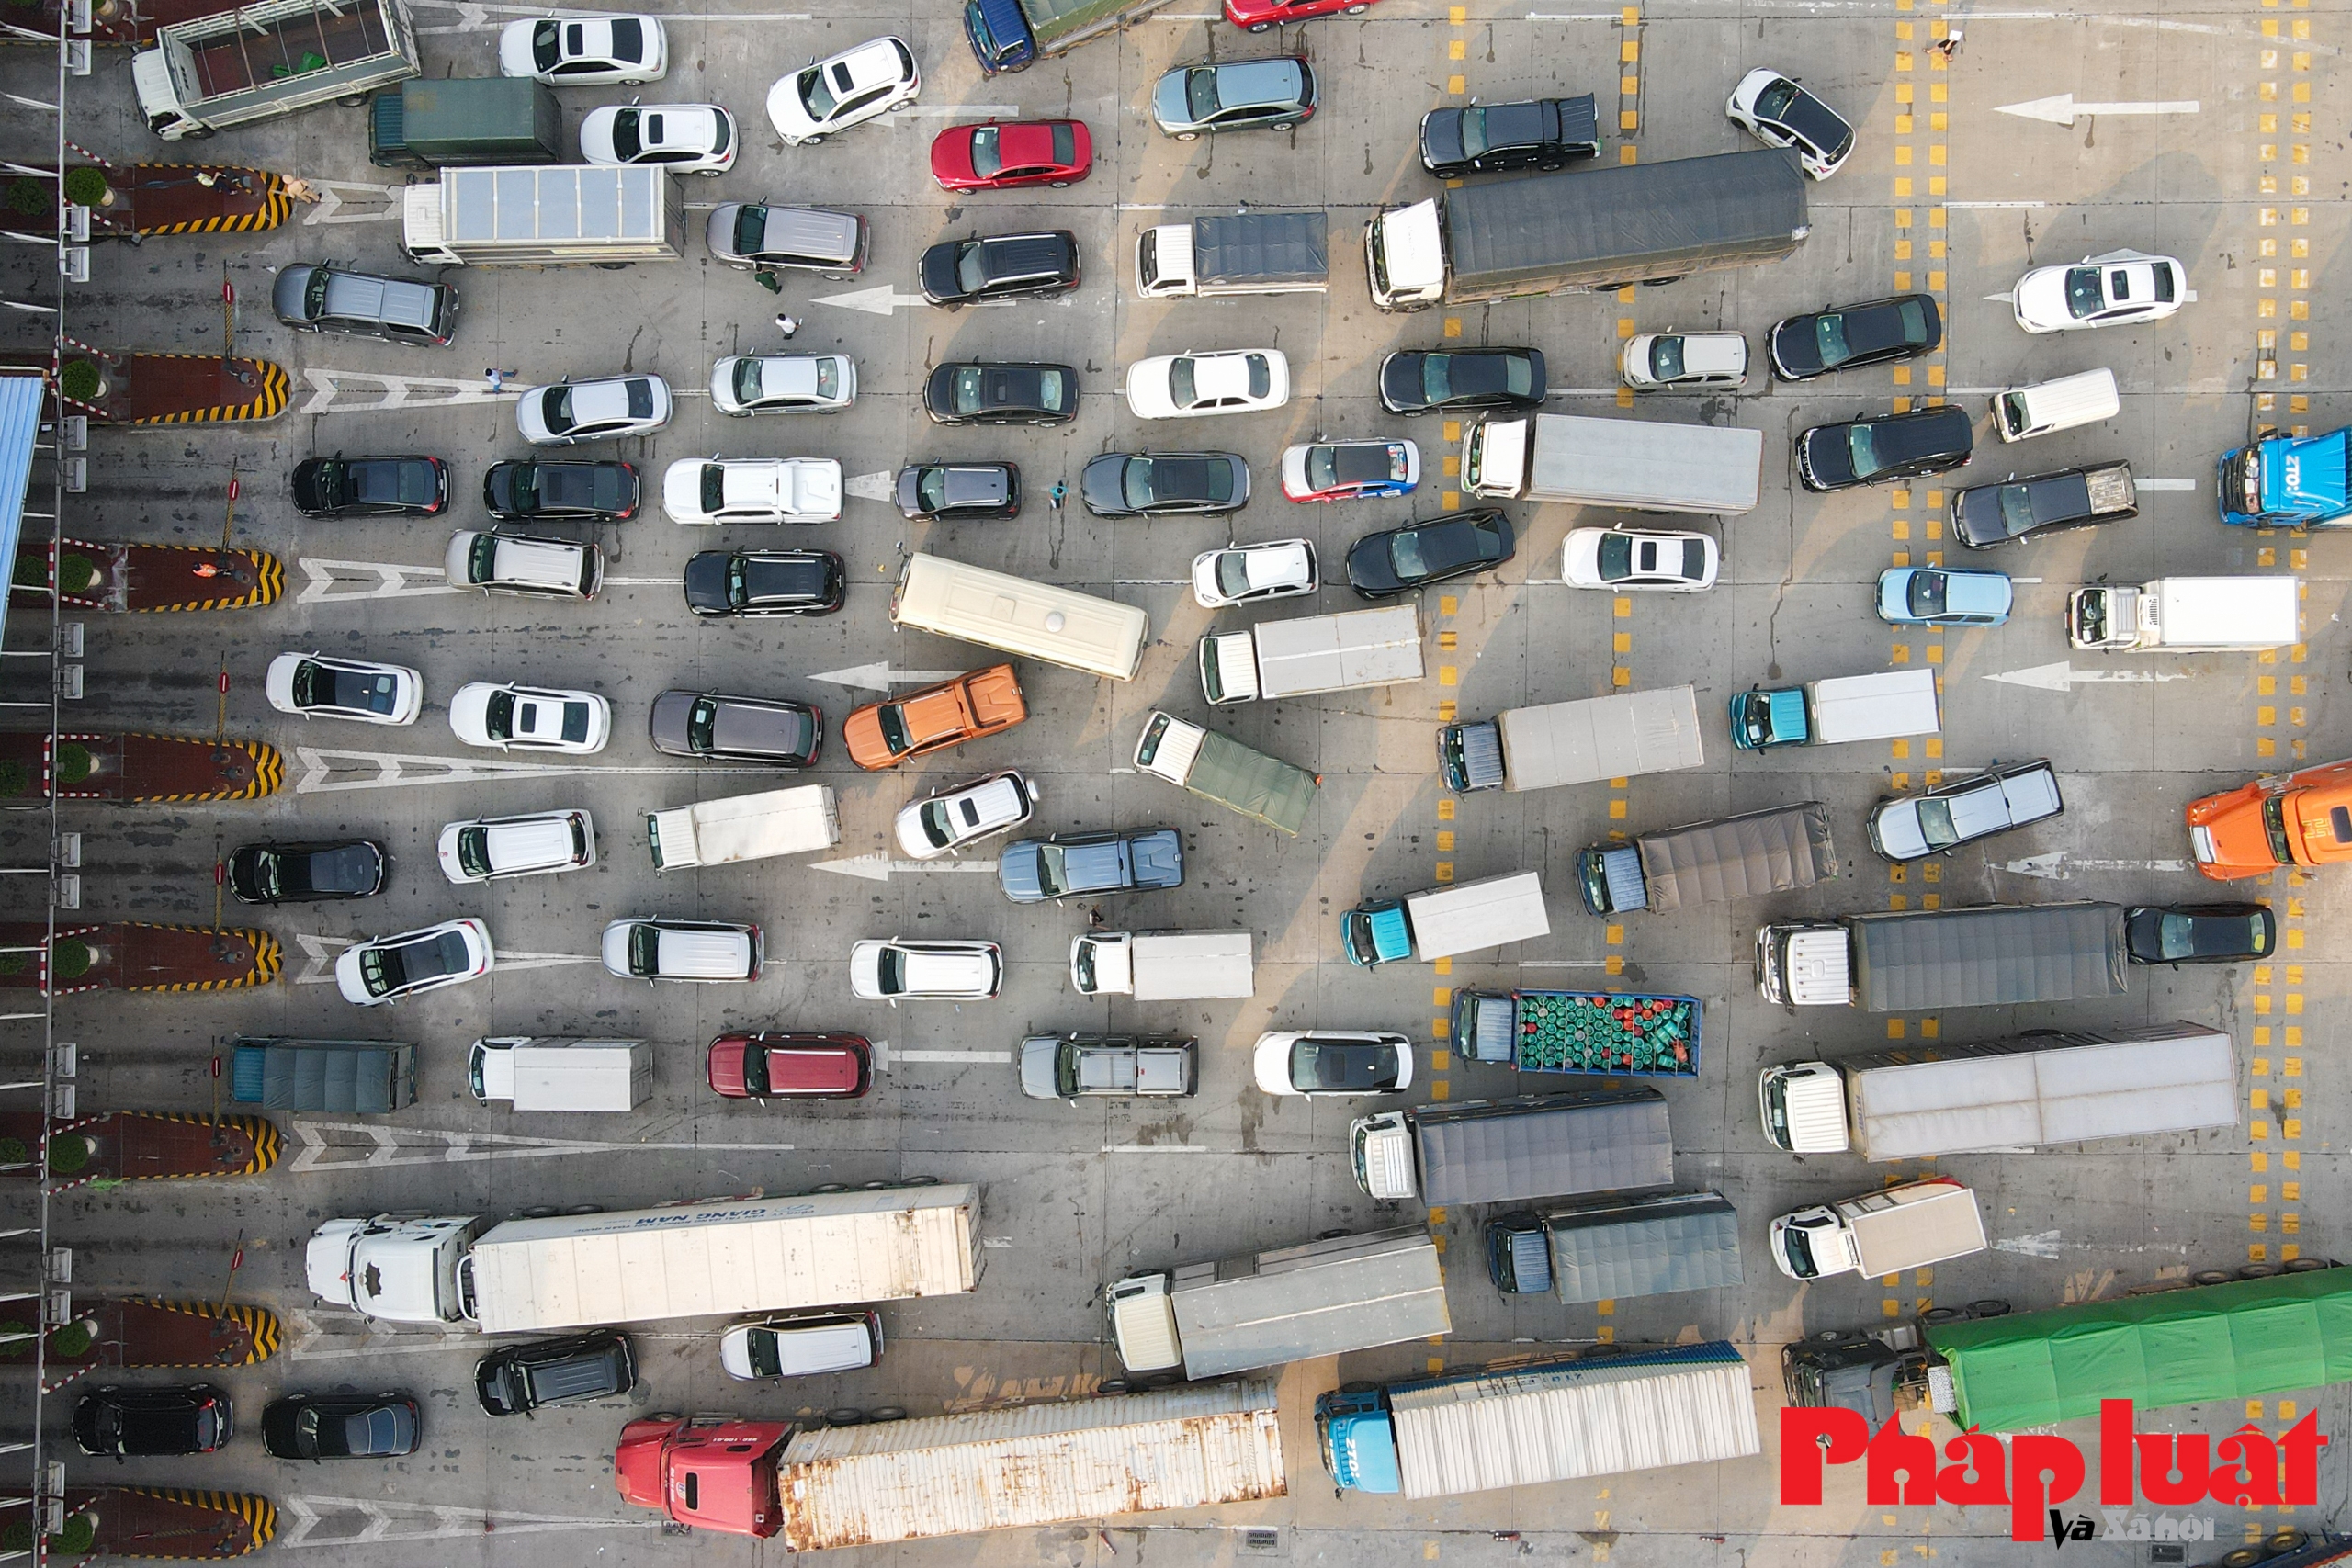 Hà Nội ngày đầu giãn cách xã hội: Hàng trăm phương tiện quay đầu tại cửa vào cao tốc